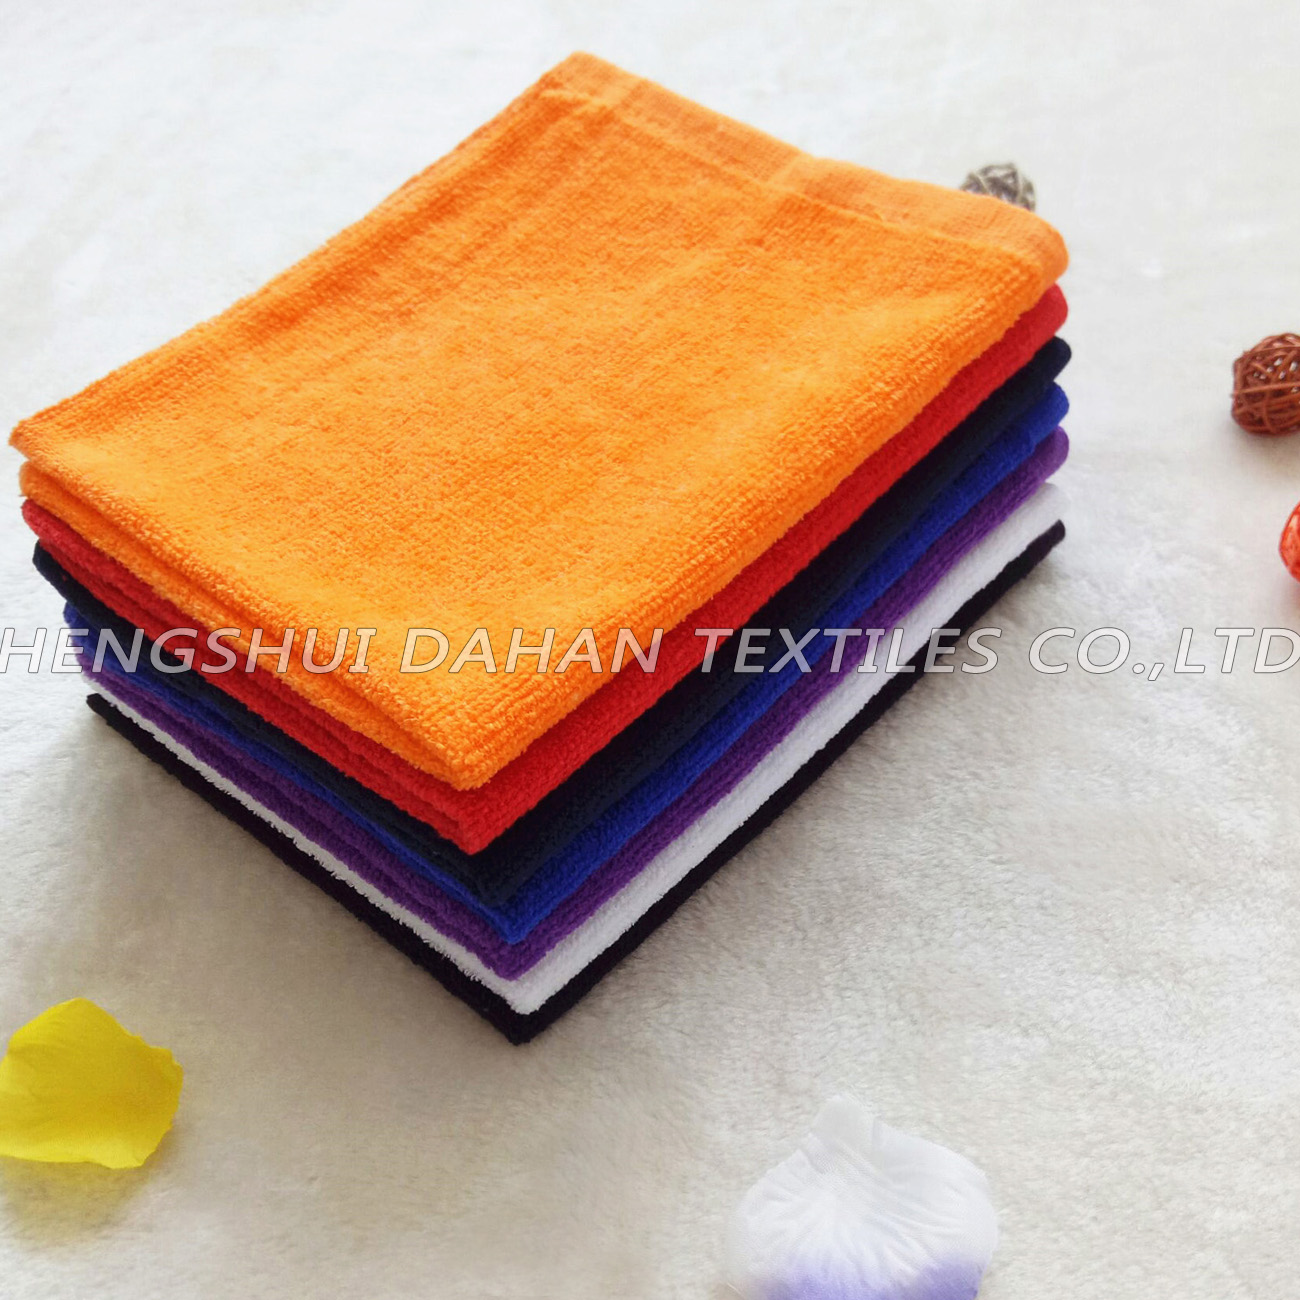 6080 100%cotton colorful kitchen towels.